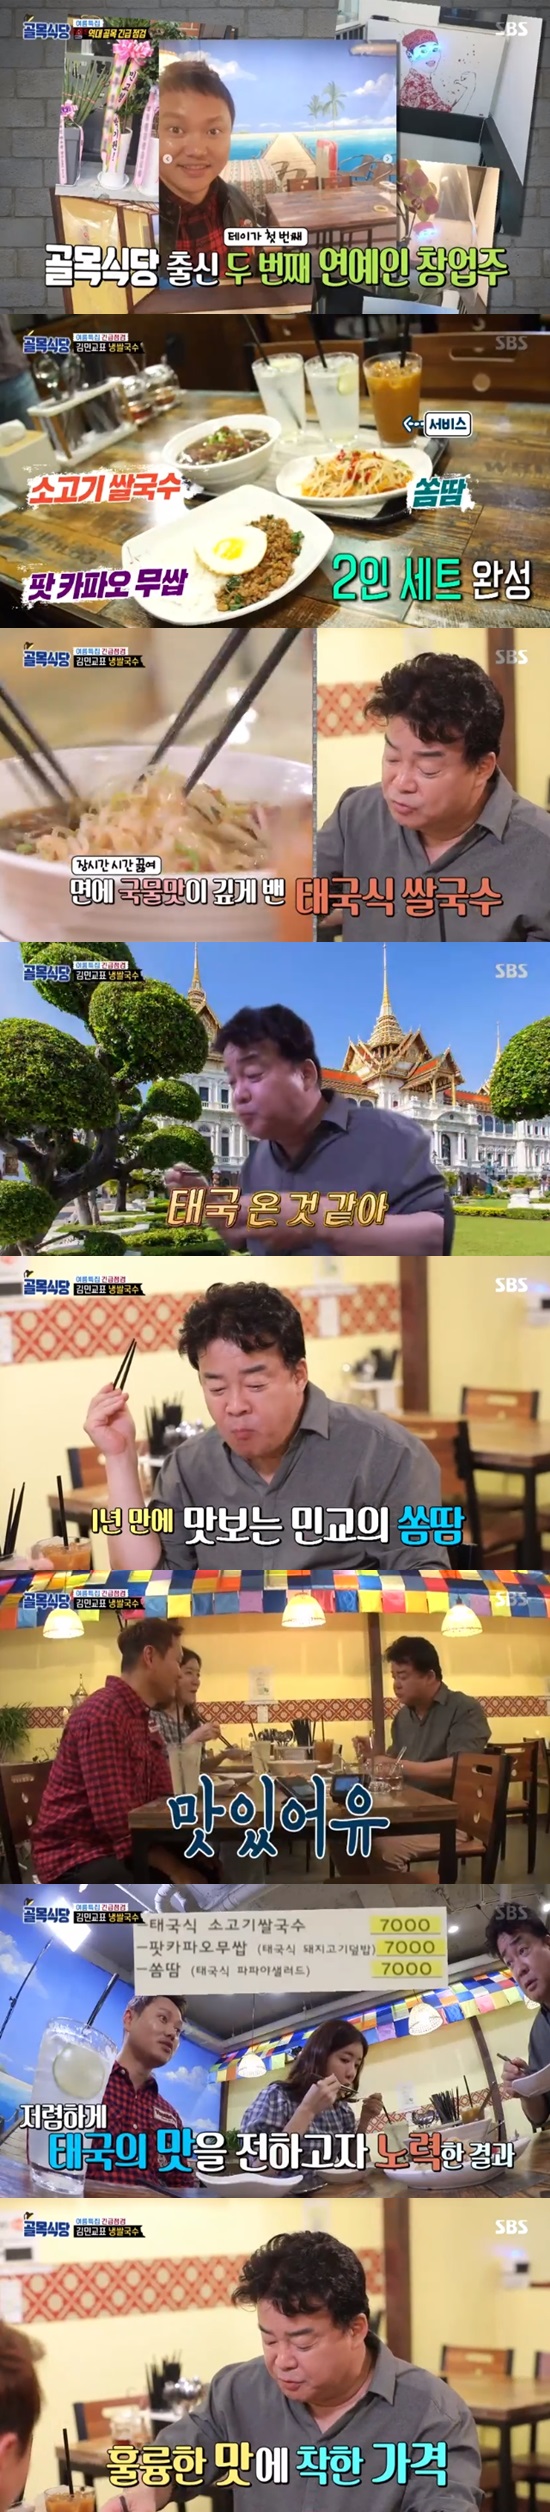 '골목식당' 백종원, 김민교 식당찾아 "백점, 가격도 예뻐" 호평